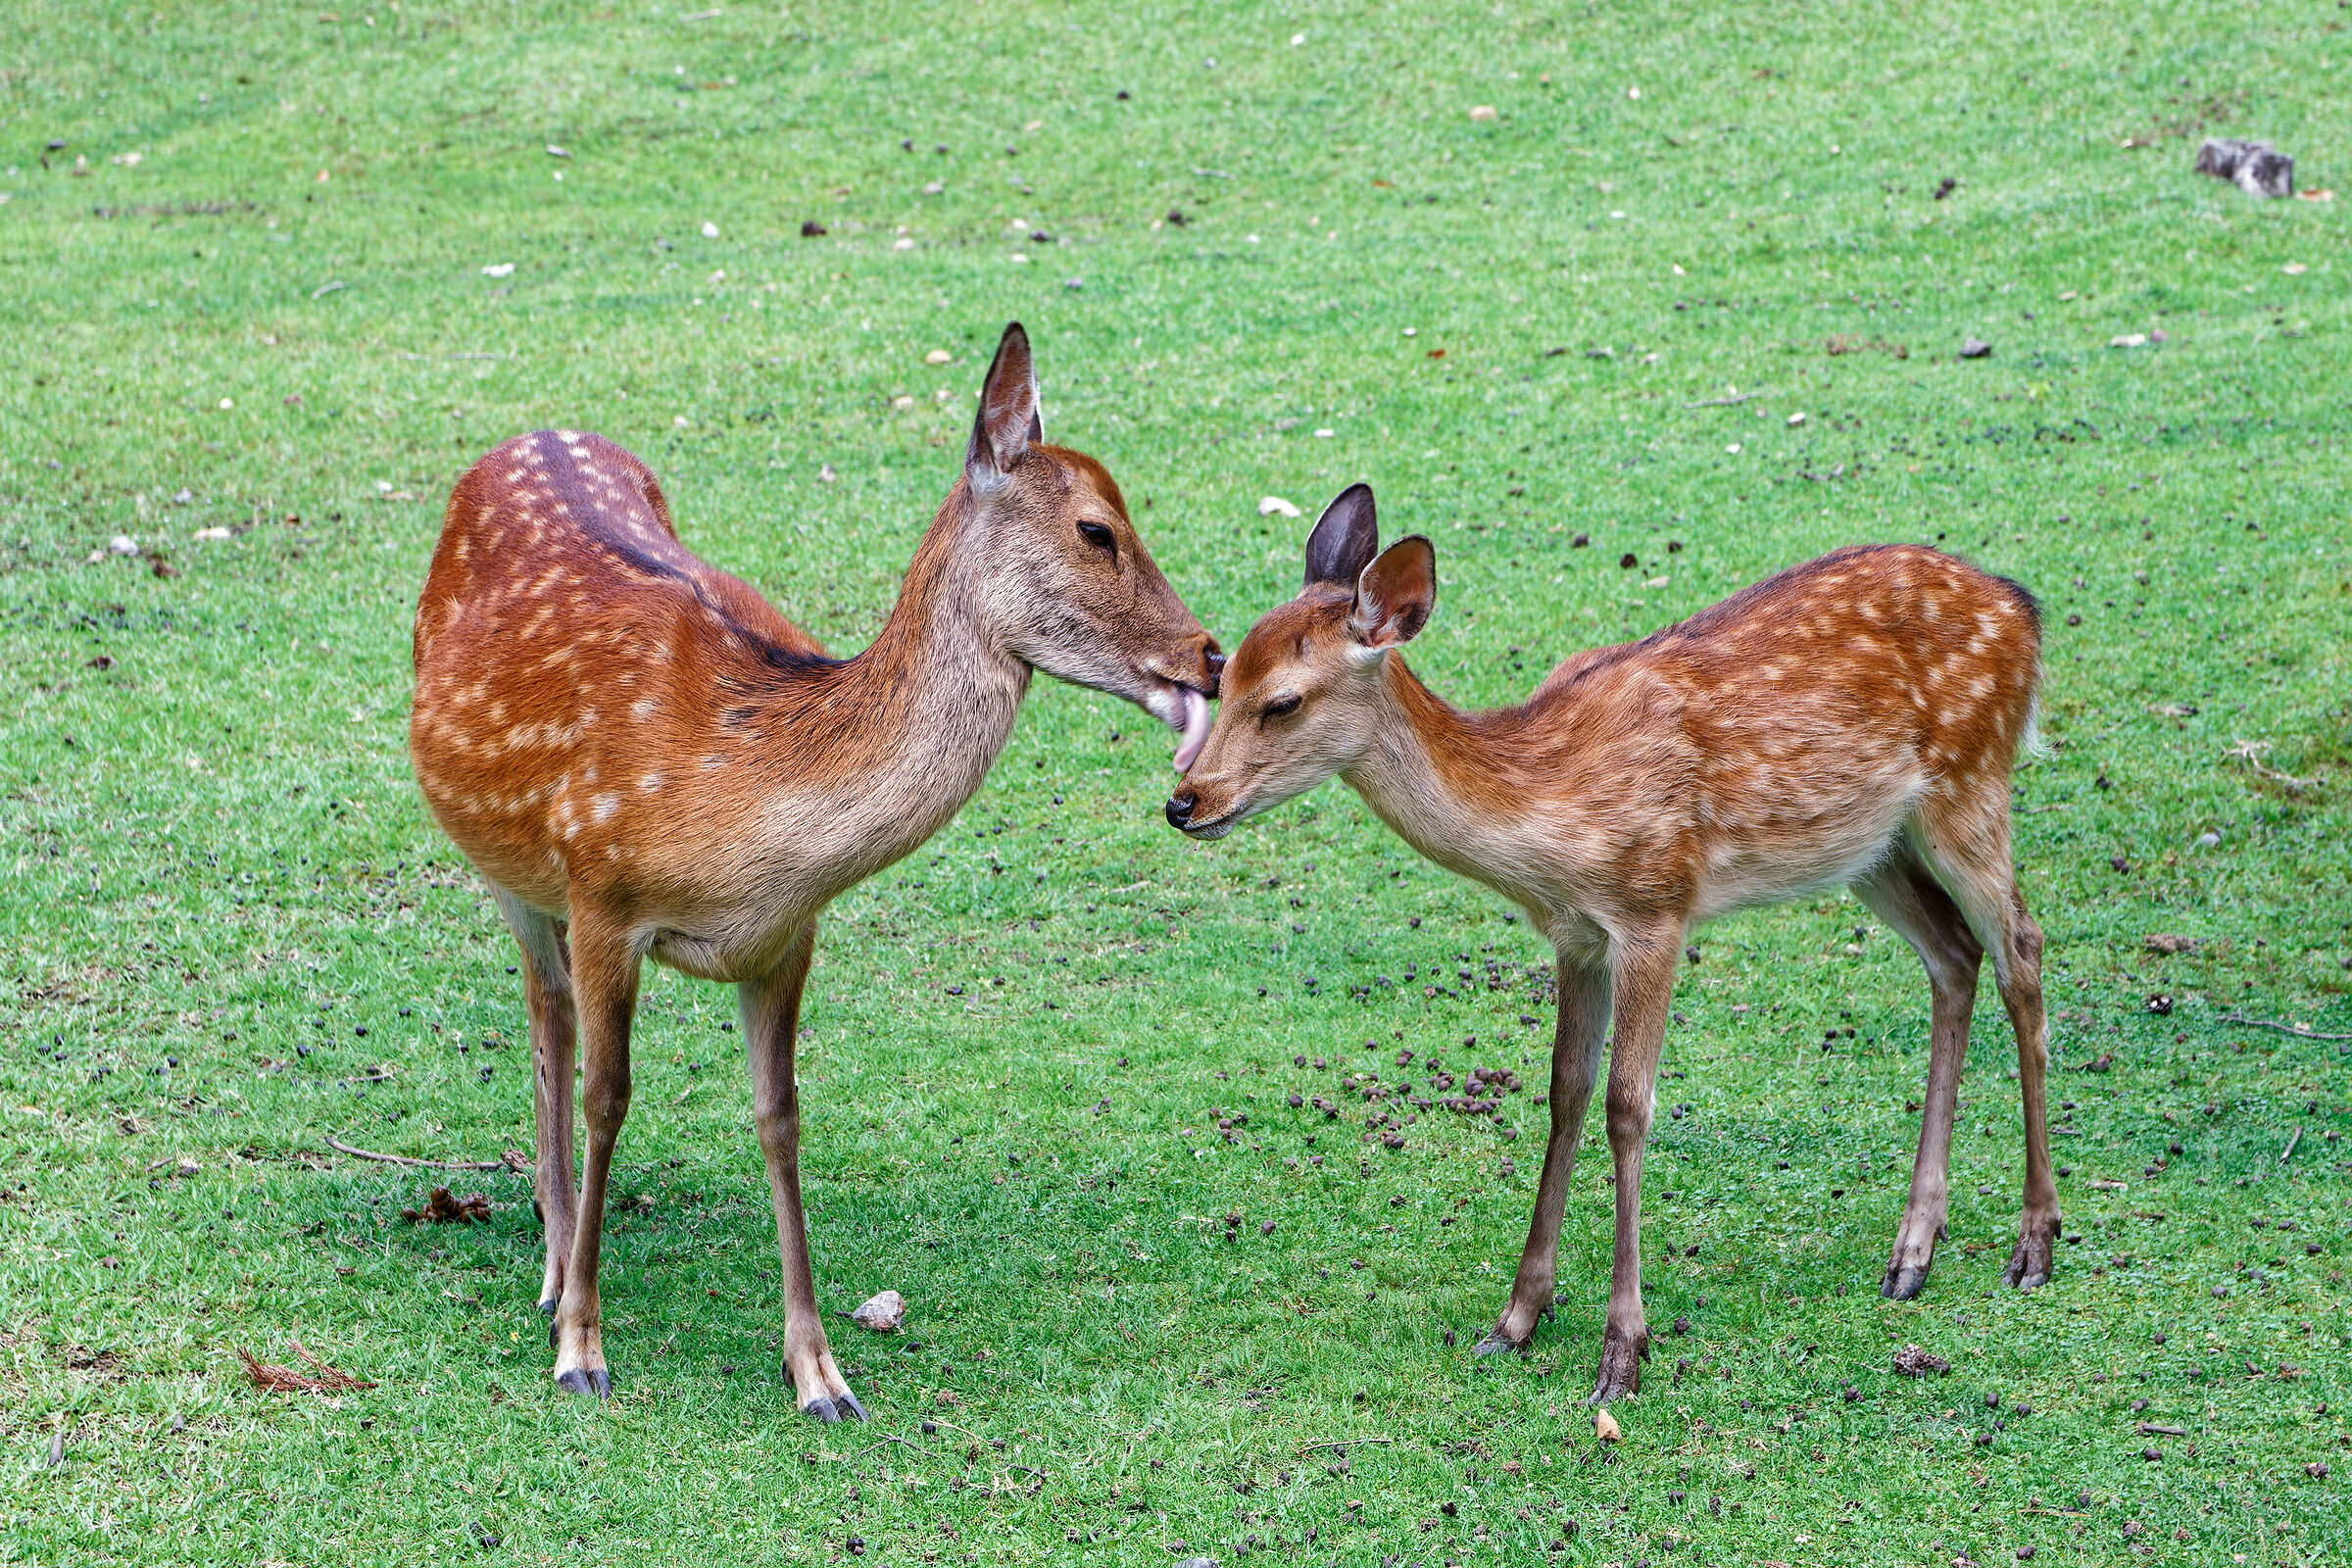 Deer in Nara...